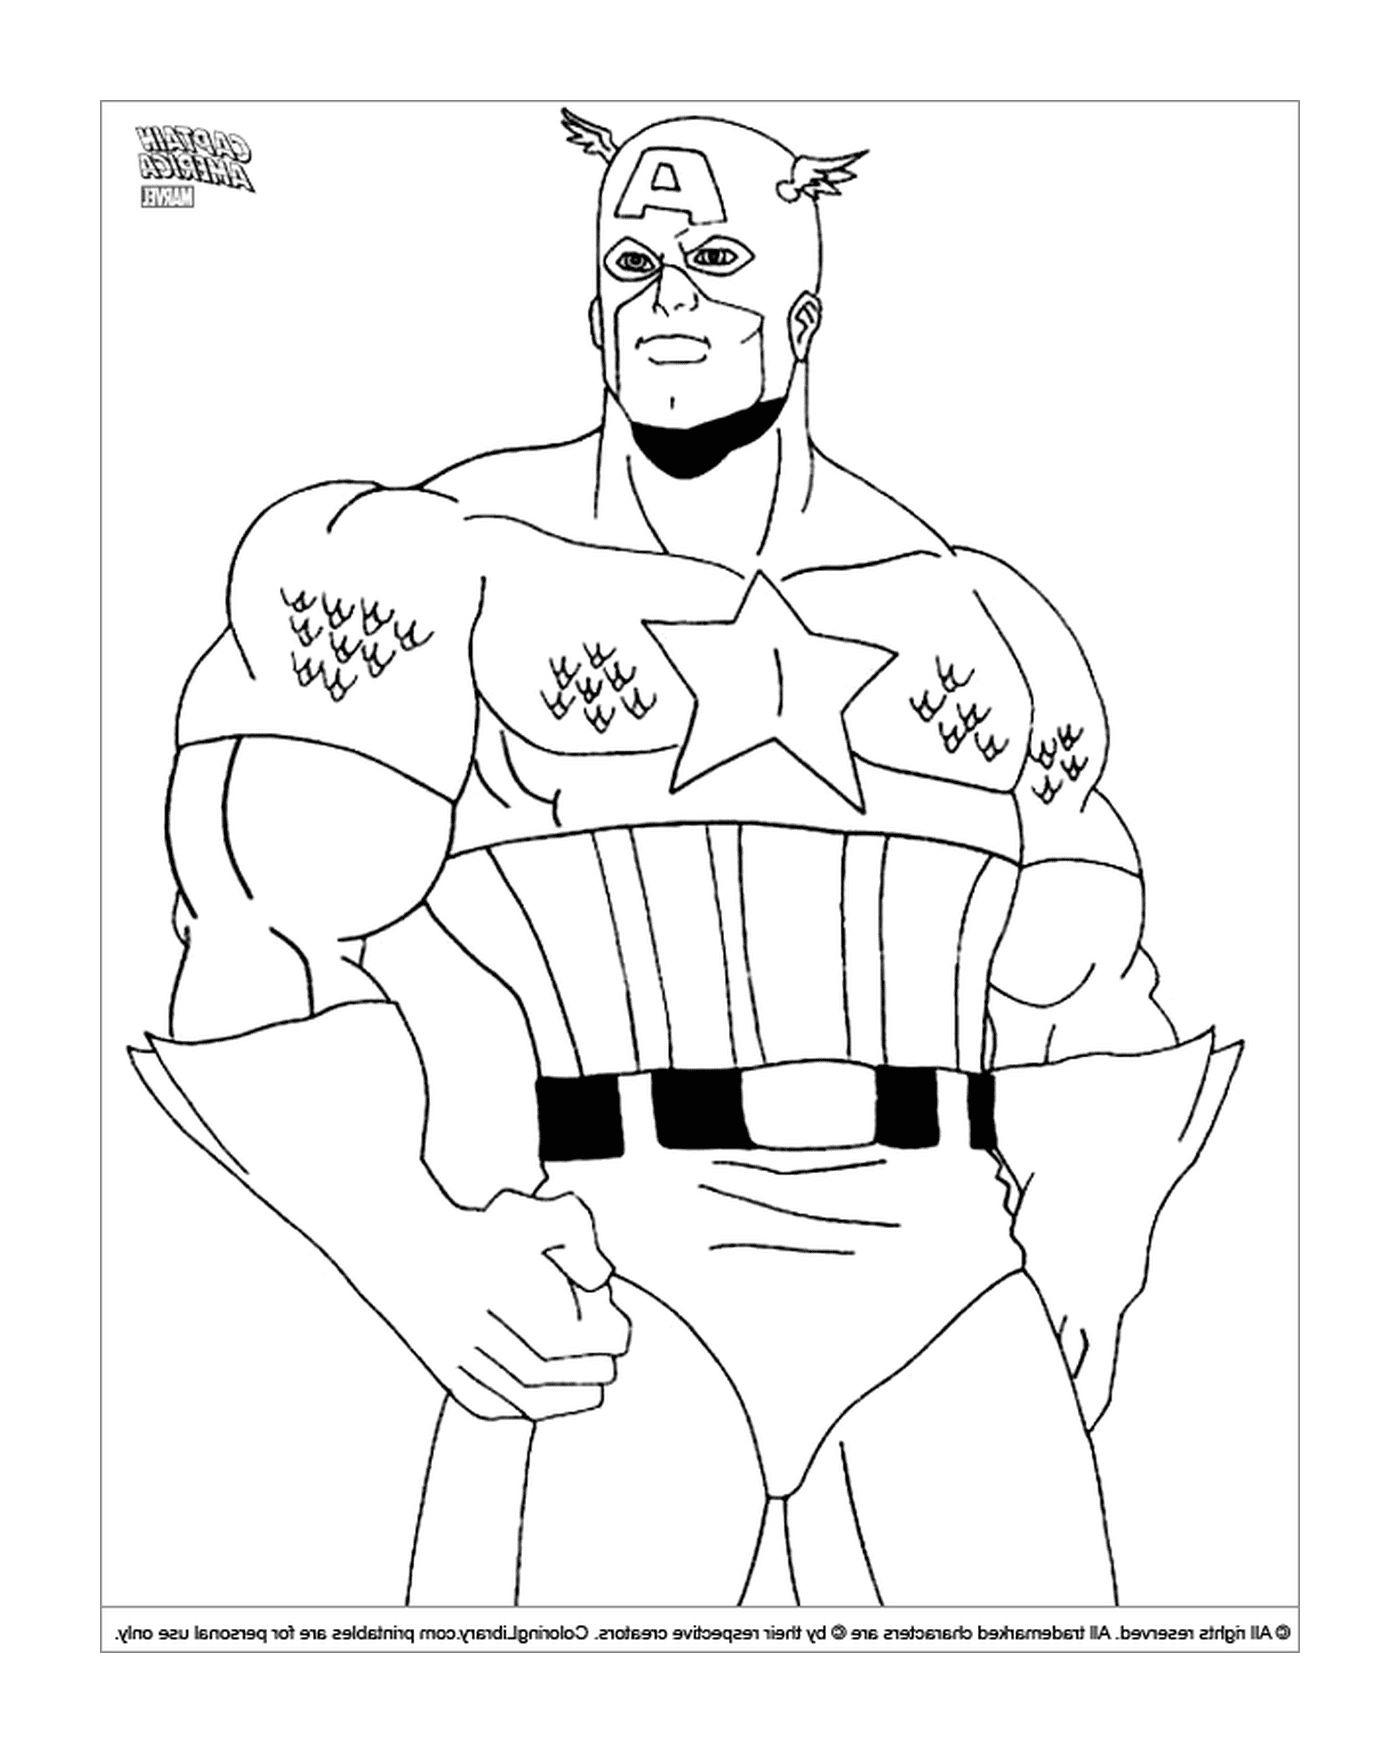  Человек в костюме Капитана Америки 